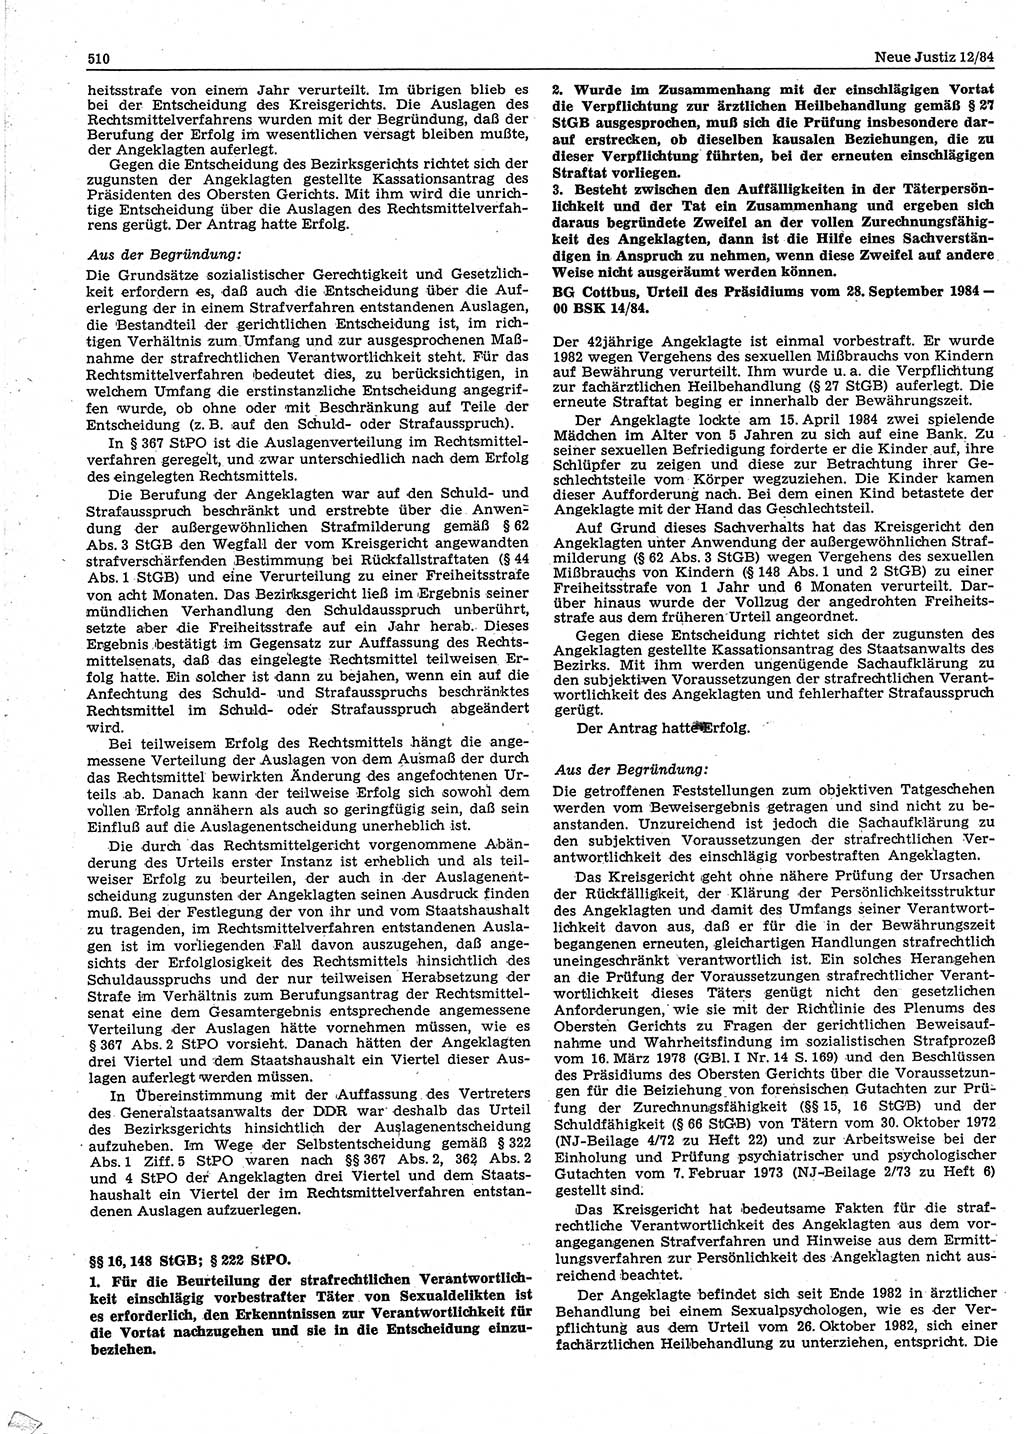 Neue Justiz (NJ), Zeitschrift für sozialistisches Recht und Gesetzlichkeit [Deutsche Demokratische Republik (DDR)], 38. Jahrgang 1984, Seite 510 (NJ DDR 1984, S. 510)